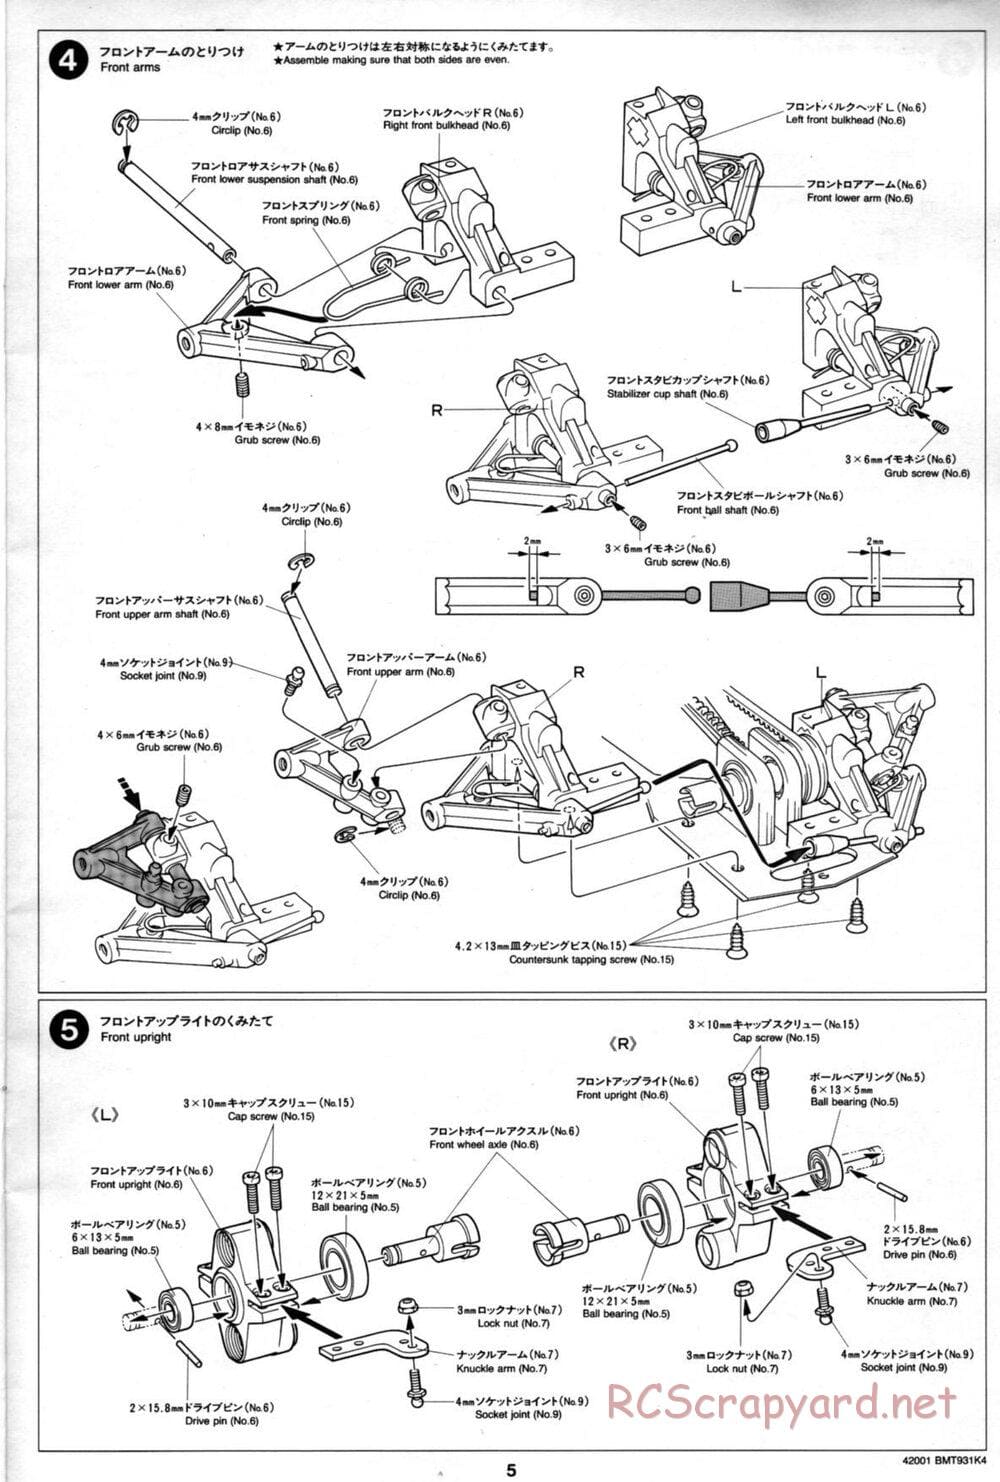 Tamiya - BMT 931 K4 Racing Chassis - Manual - Page 5